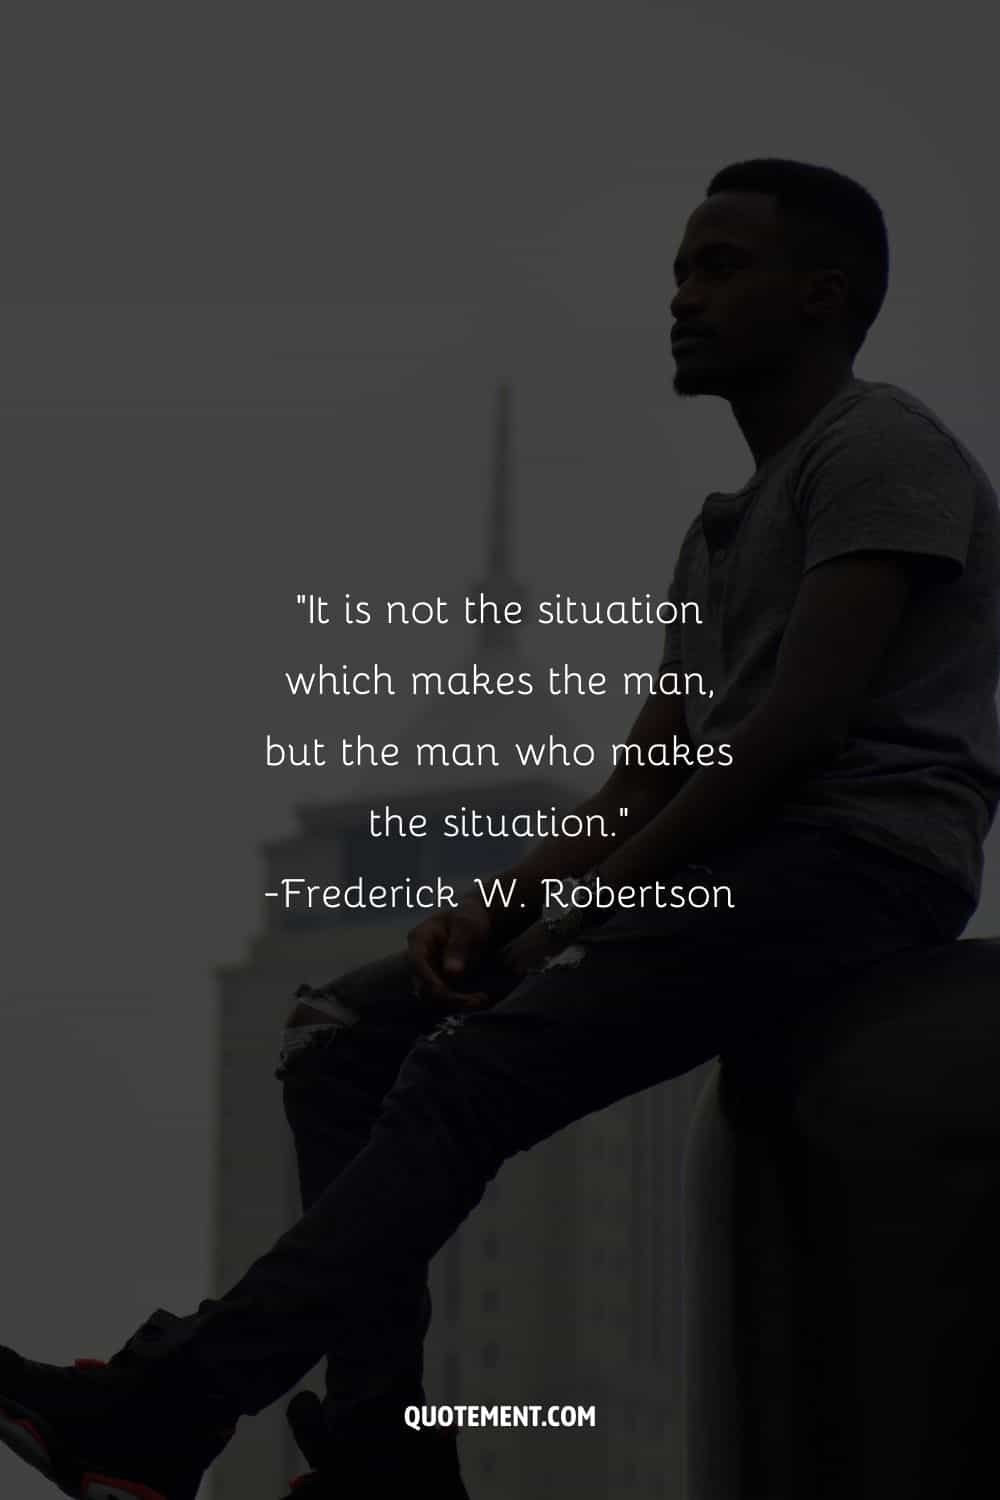 No es la situación la que hace al hombre, sino el hombre el que hace la situación